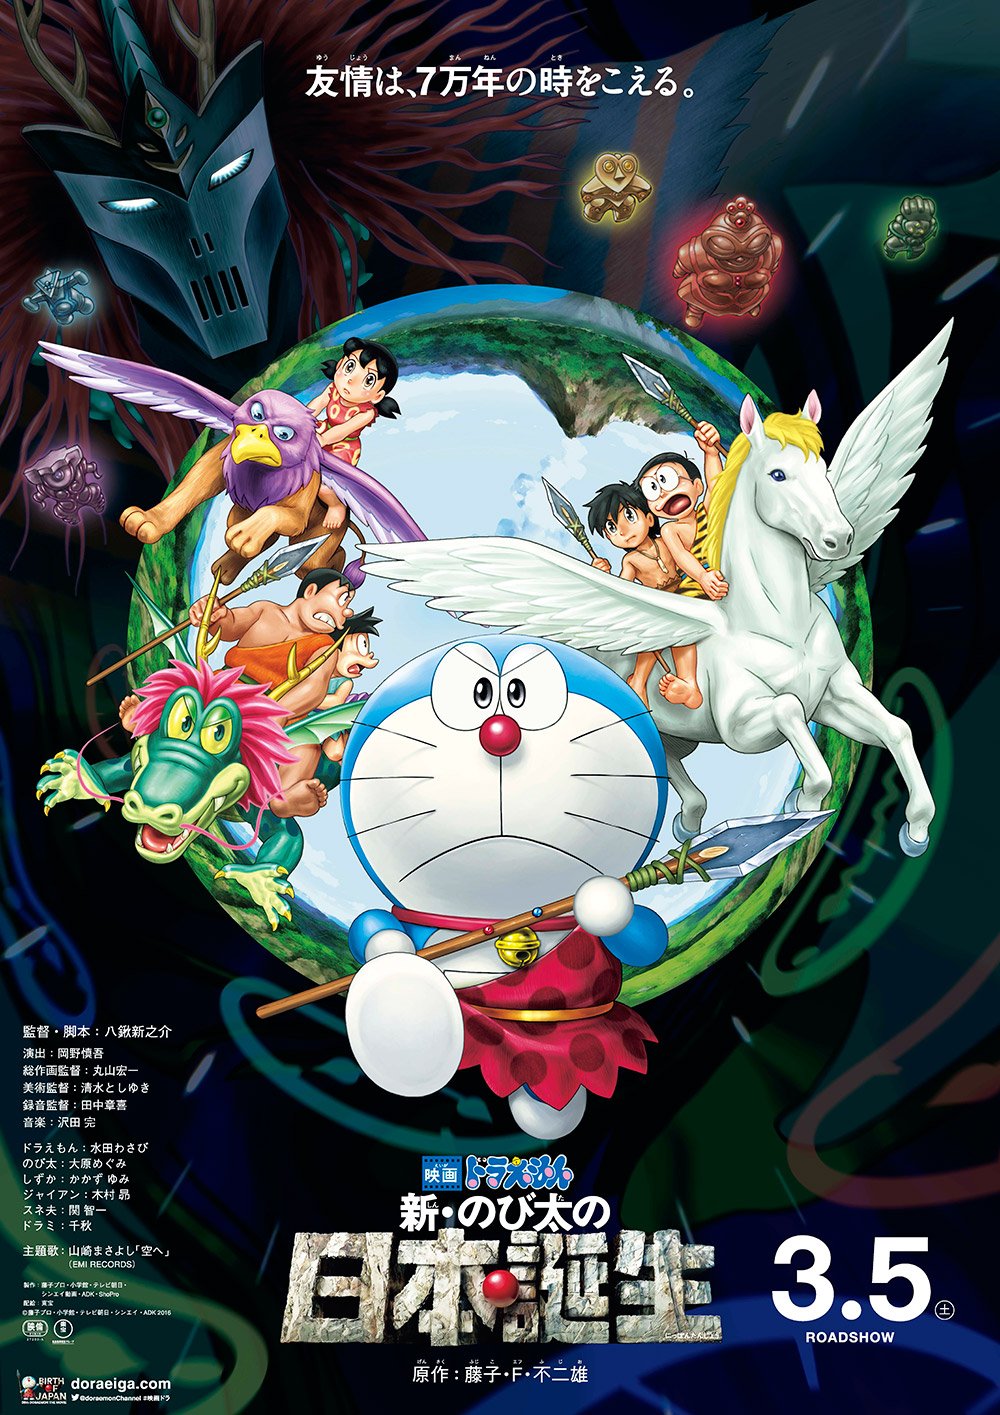 ดูหนังออนไลน์ฟรี Doraemon The Movie 10 (1989) โดเรม่อนเดอะมูฟวี่ ท่องแดนญี่ปุ่นโบราณ